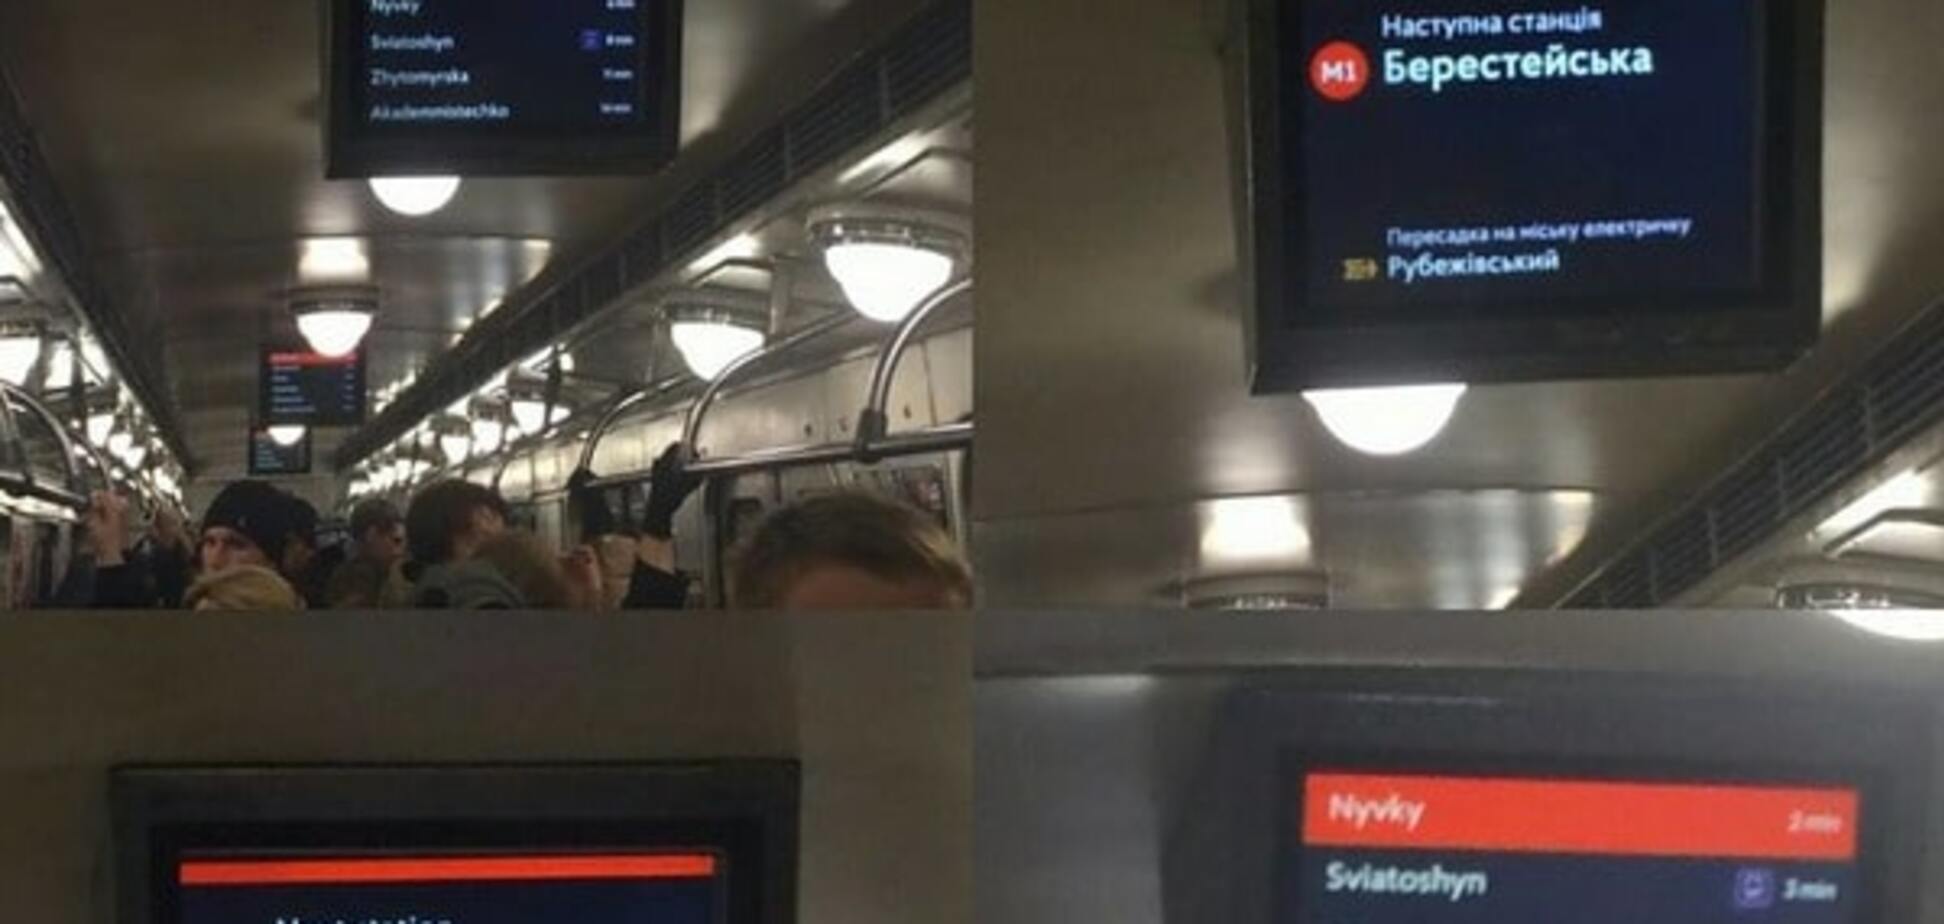 Они работают: в вагонах киевского метро запустили обновленные 'телевизоры'